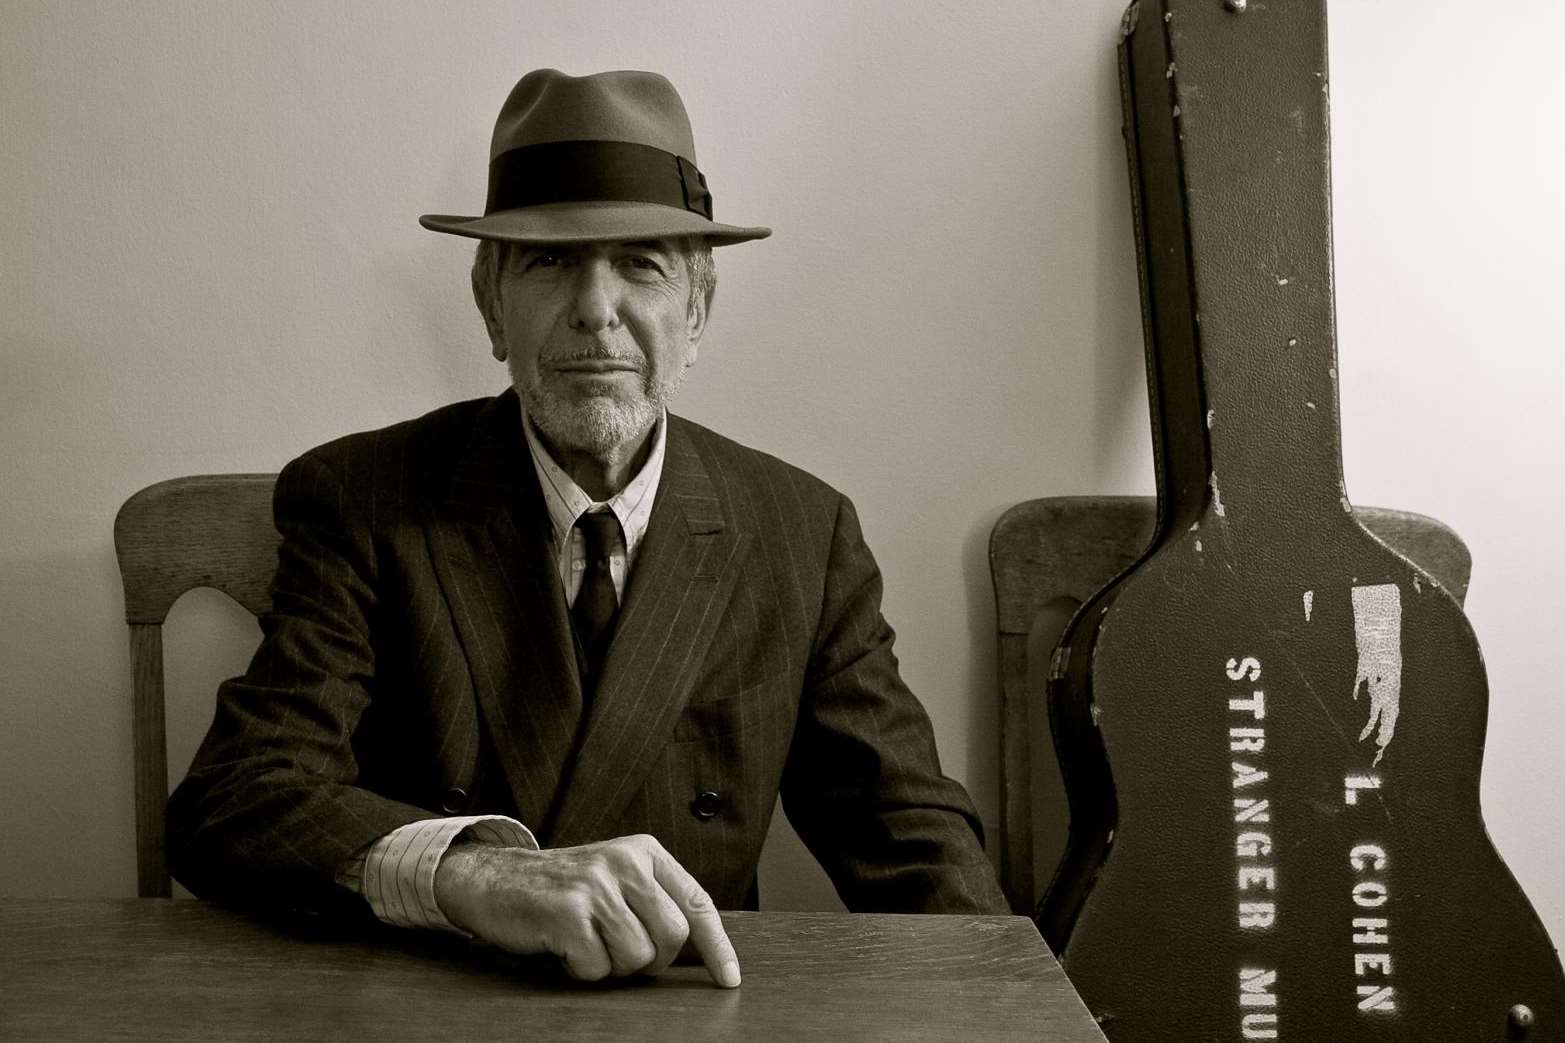 Leonard Cohen died in November 2016